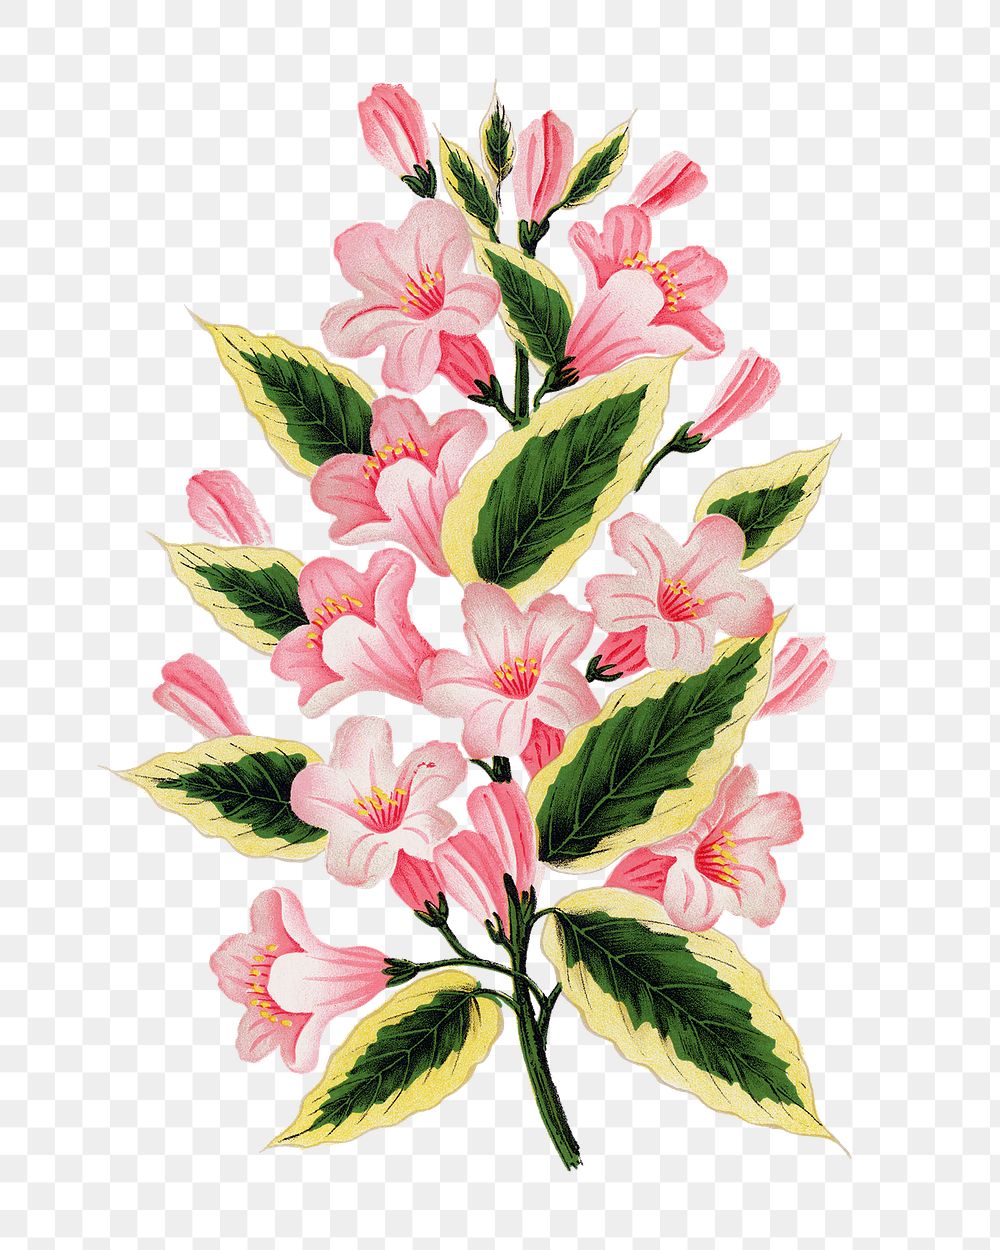 Pink flowers png sticker, vintage botanical illustration, transparent background